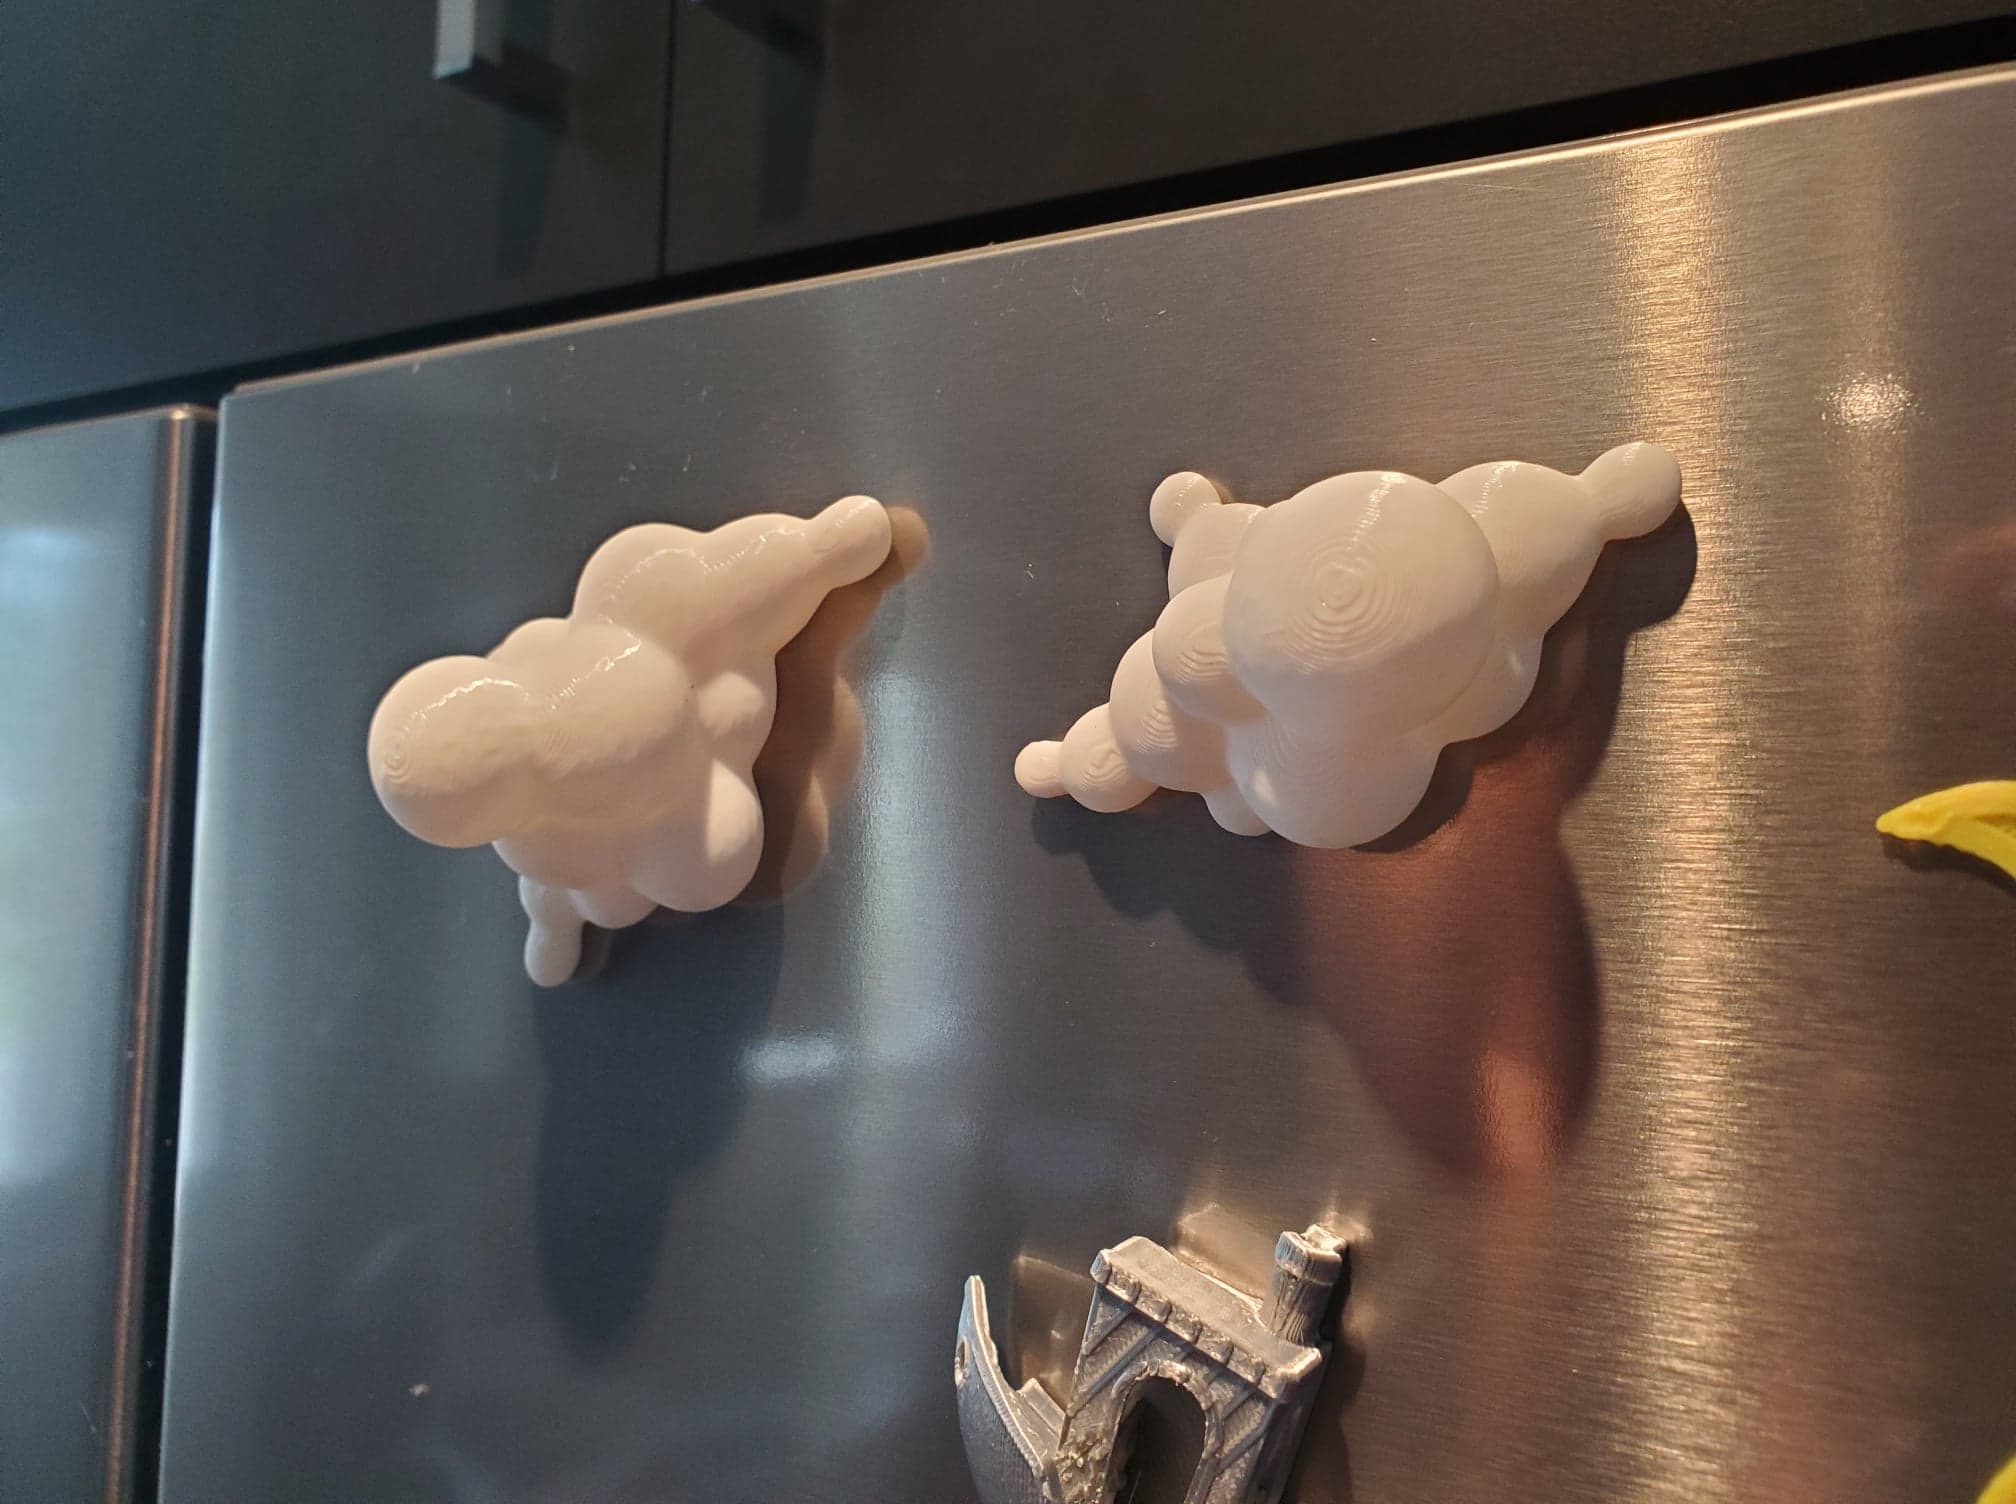 Cloud fridge magnets